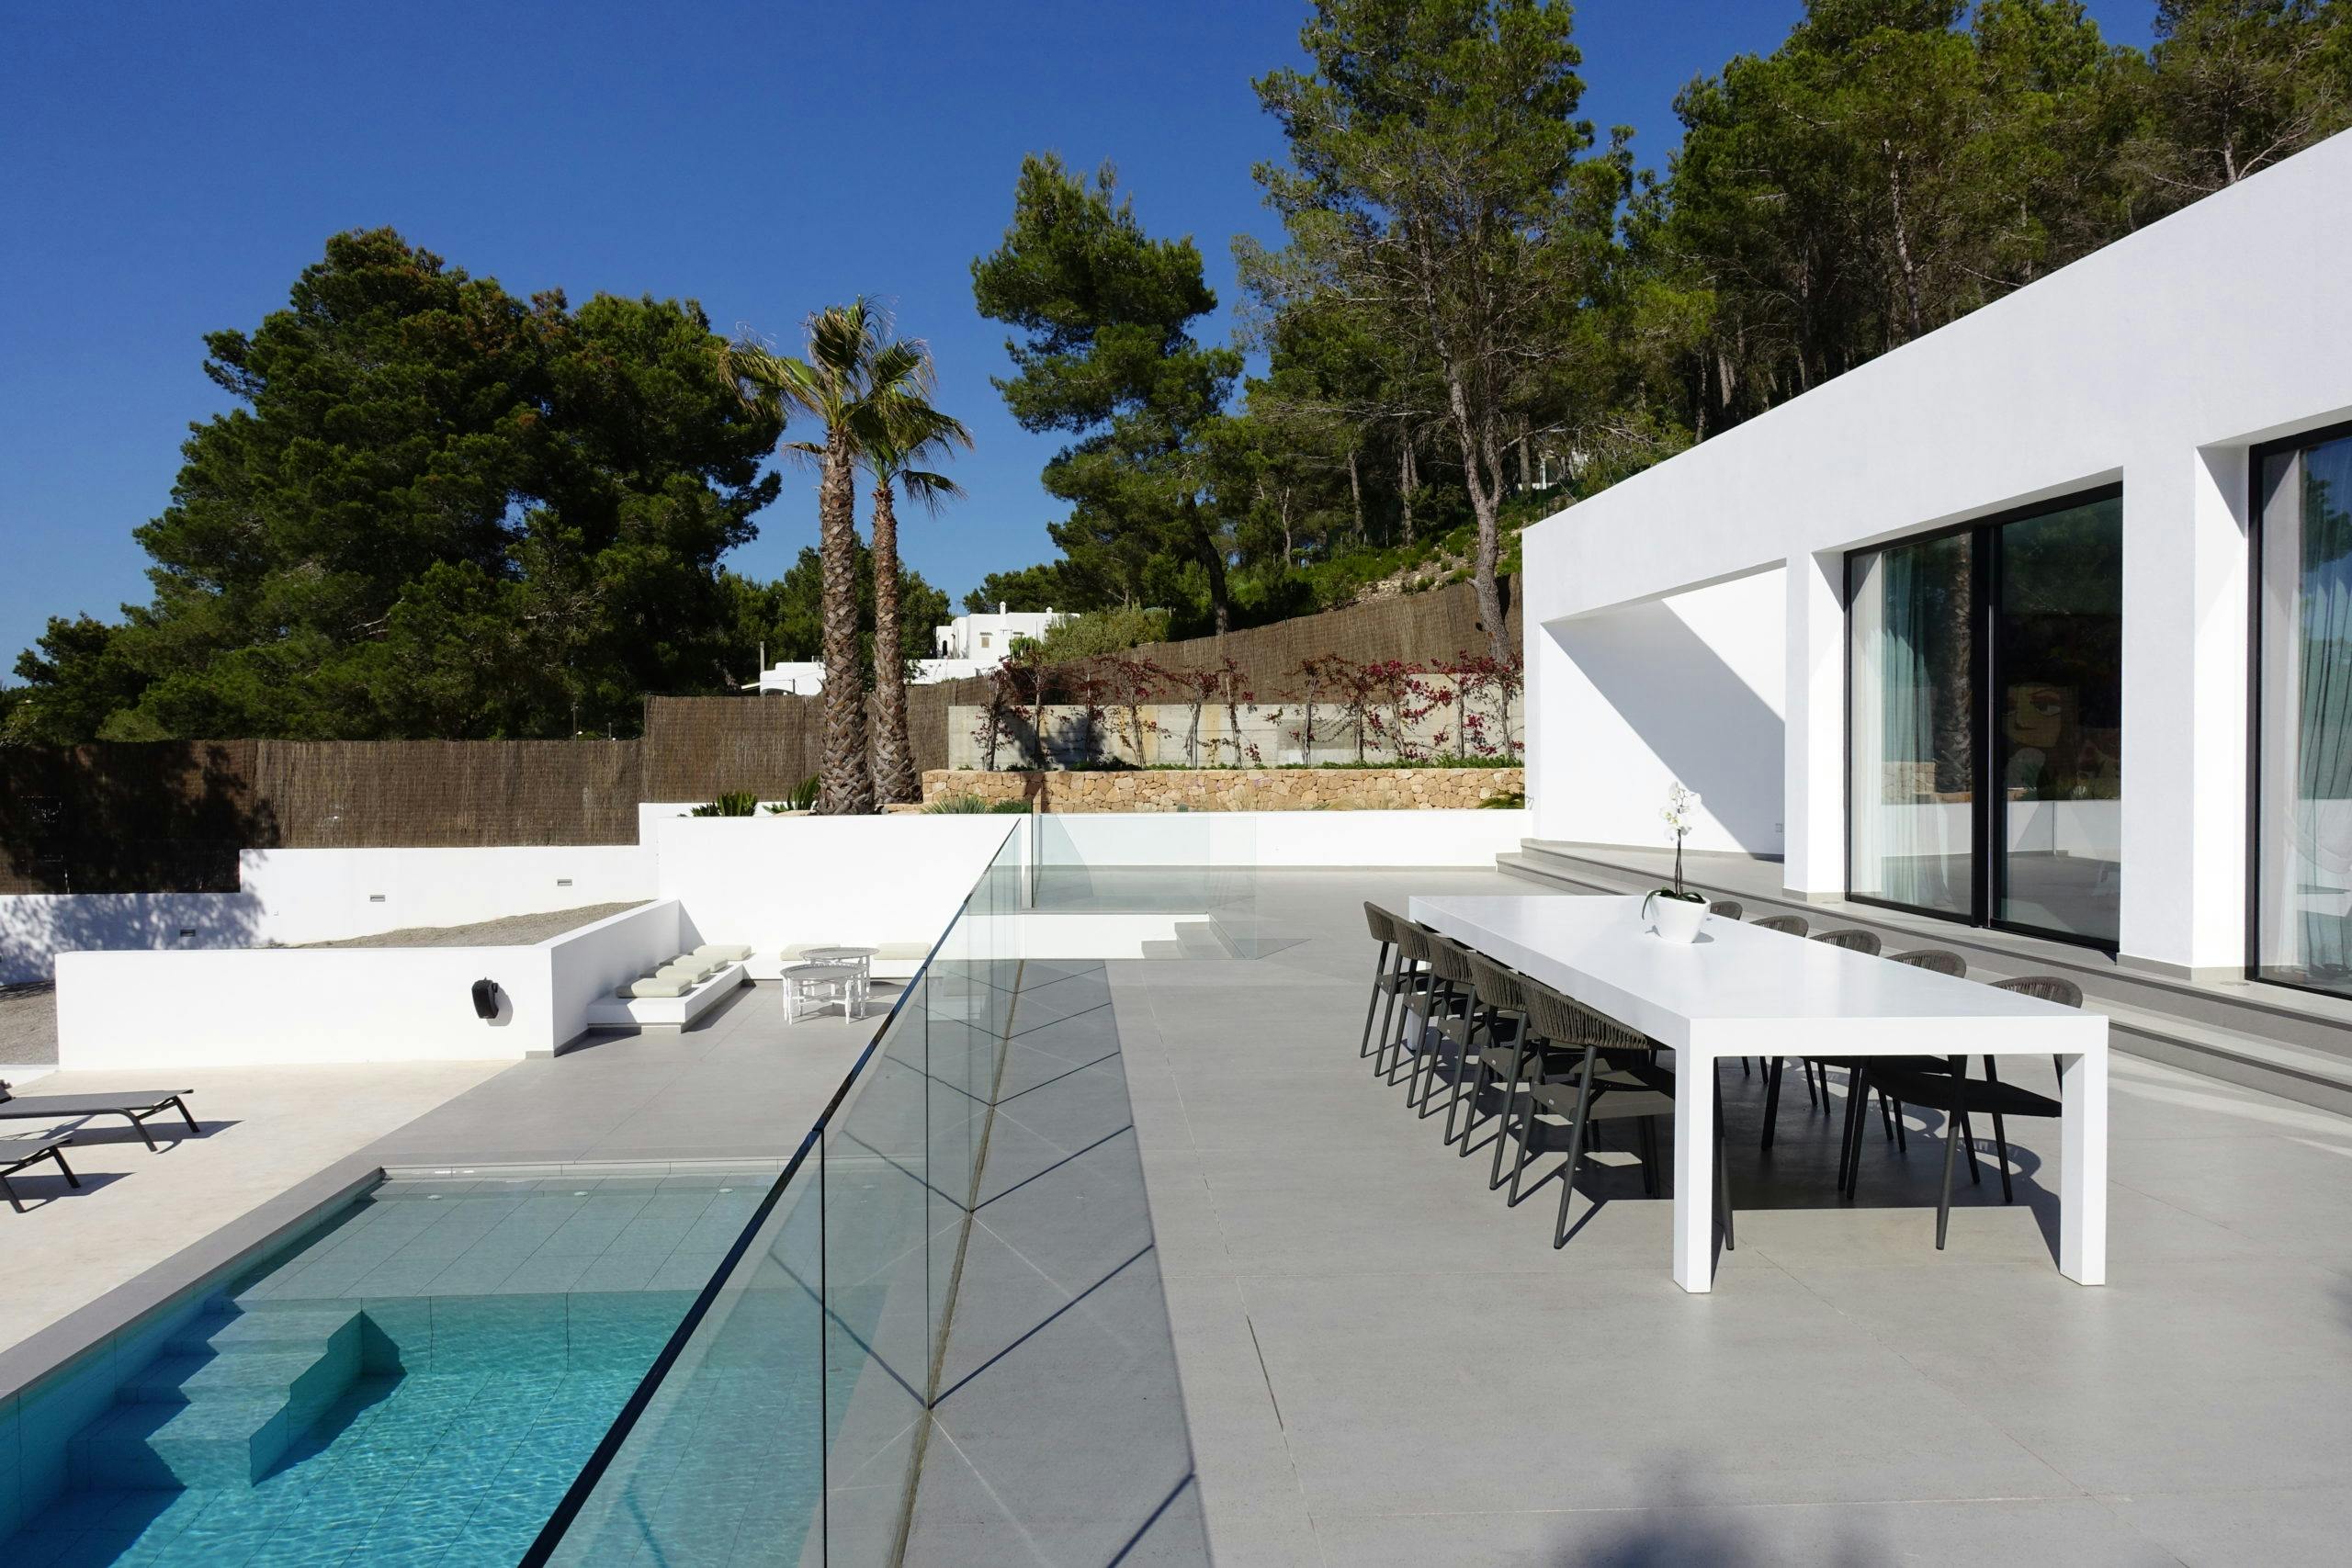 Numero immagine 32 della sezione corrente di Case Study Villa Omnia a Ibiza realizzata con DKTN® e Silestone® by Cosentino di Cosentino Italia